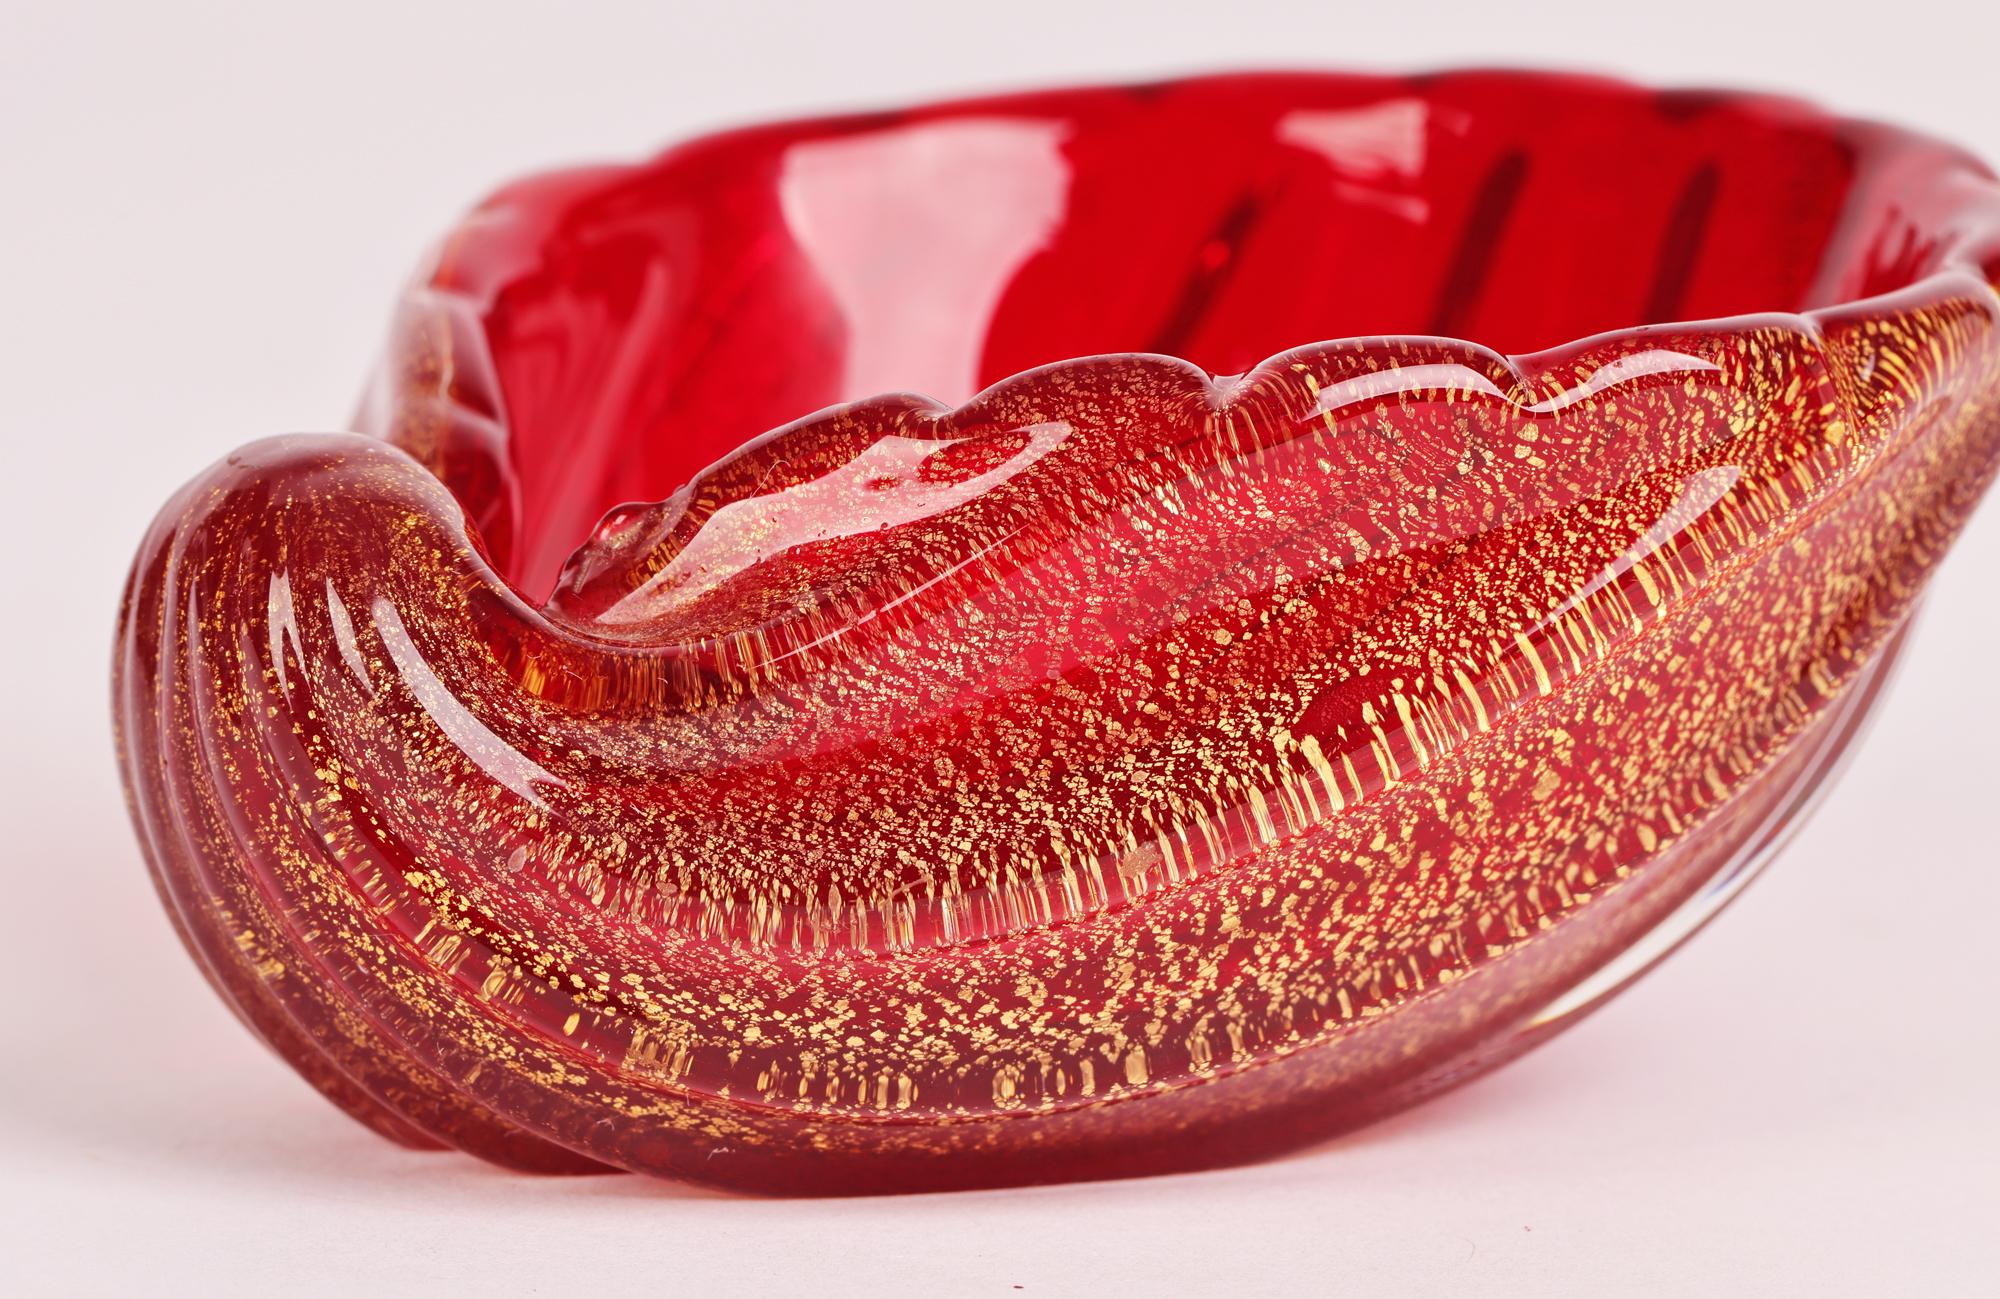 Superbe plat en verre d'art Cordonato D'oro en forme de coquille, en verre d'art rouge de Murano, datant du milieu du siècle dernier, par Ercole Barovier & Toso (fondé en 1880). Le plat est modelé comme une coquille de palourde avec une base plate